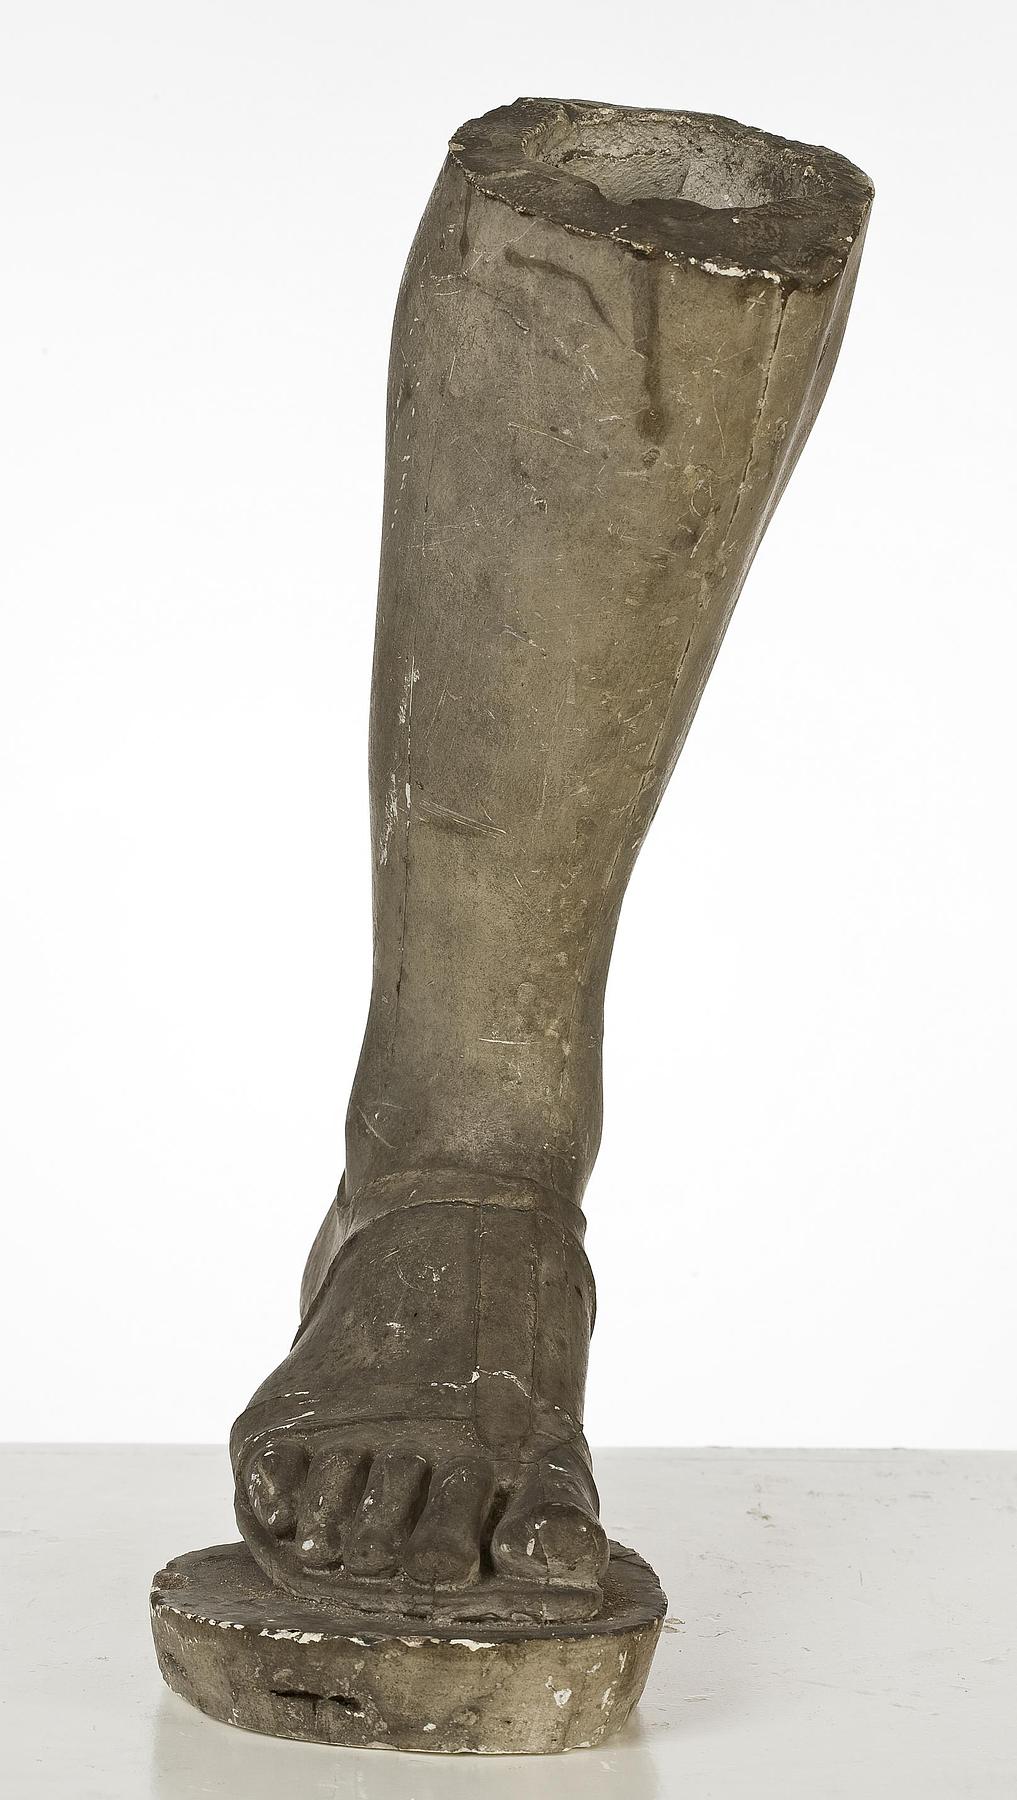 Højre fod og ankel af den kapitolinske Camillus, L71a